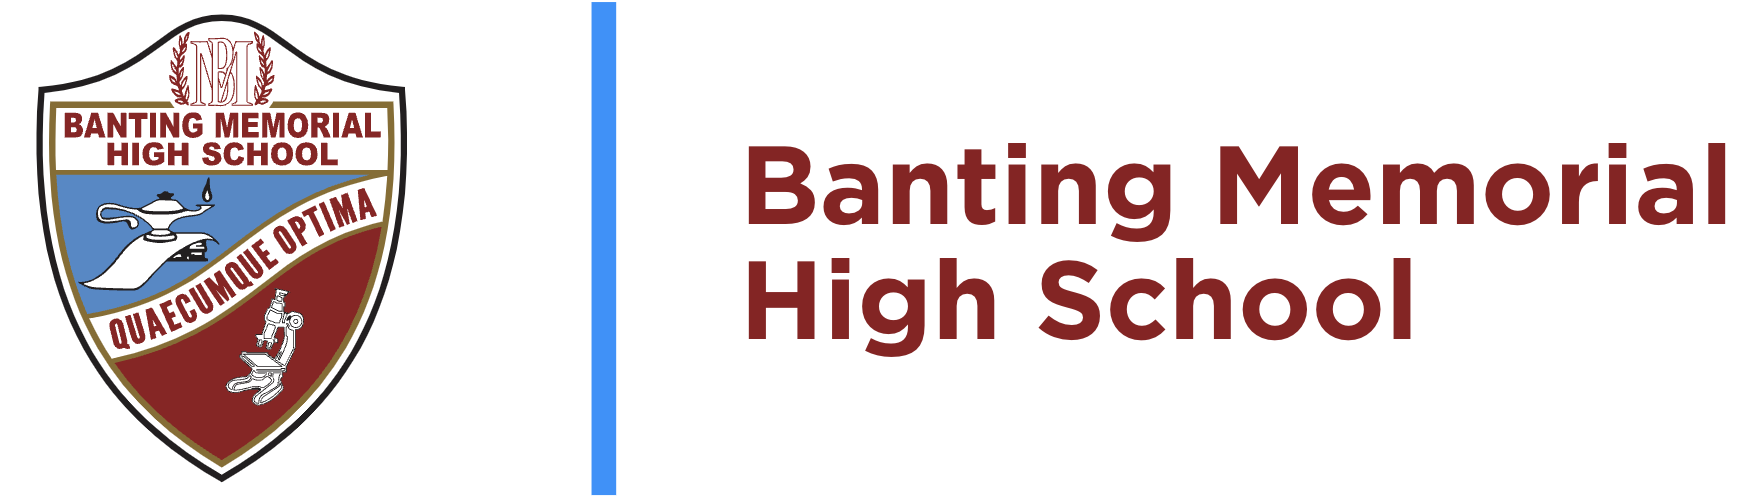 Banting Memorial High School